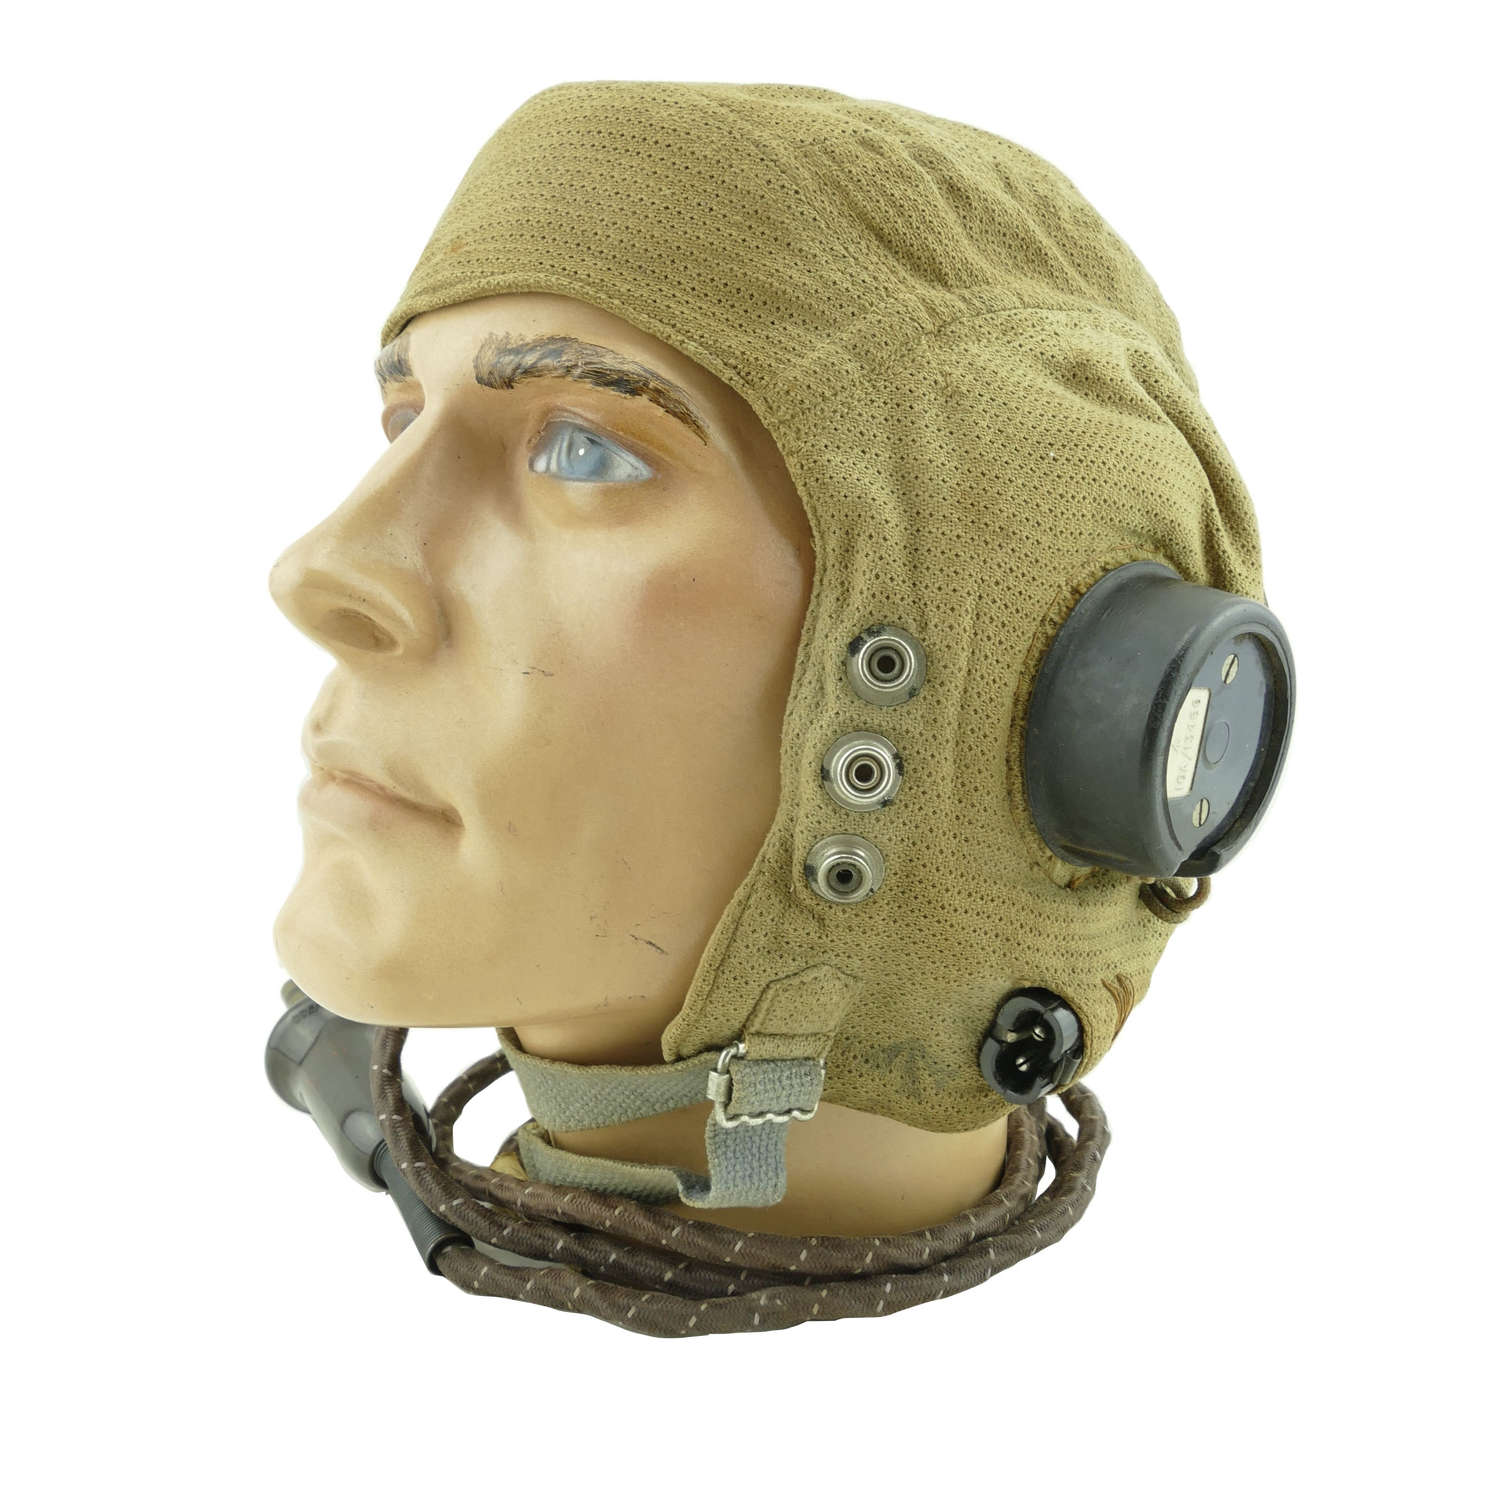 RAF E-type flying helmet